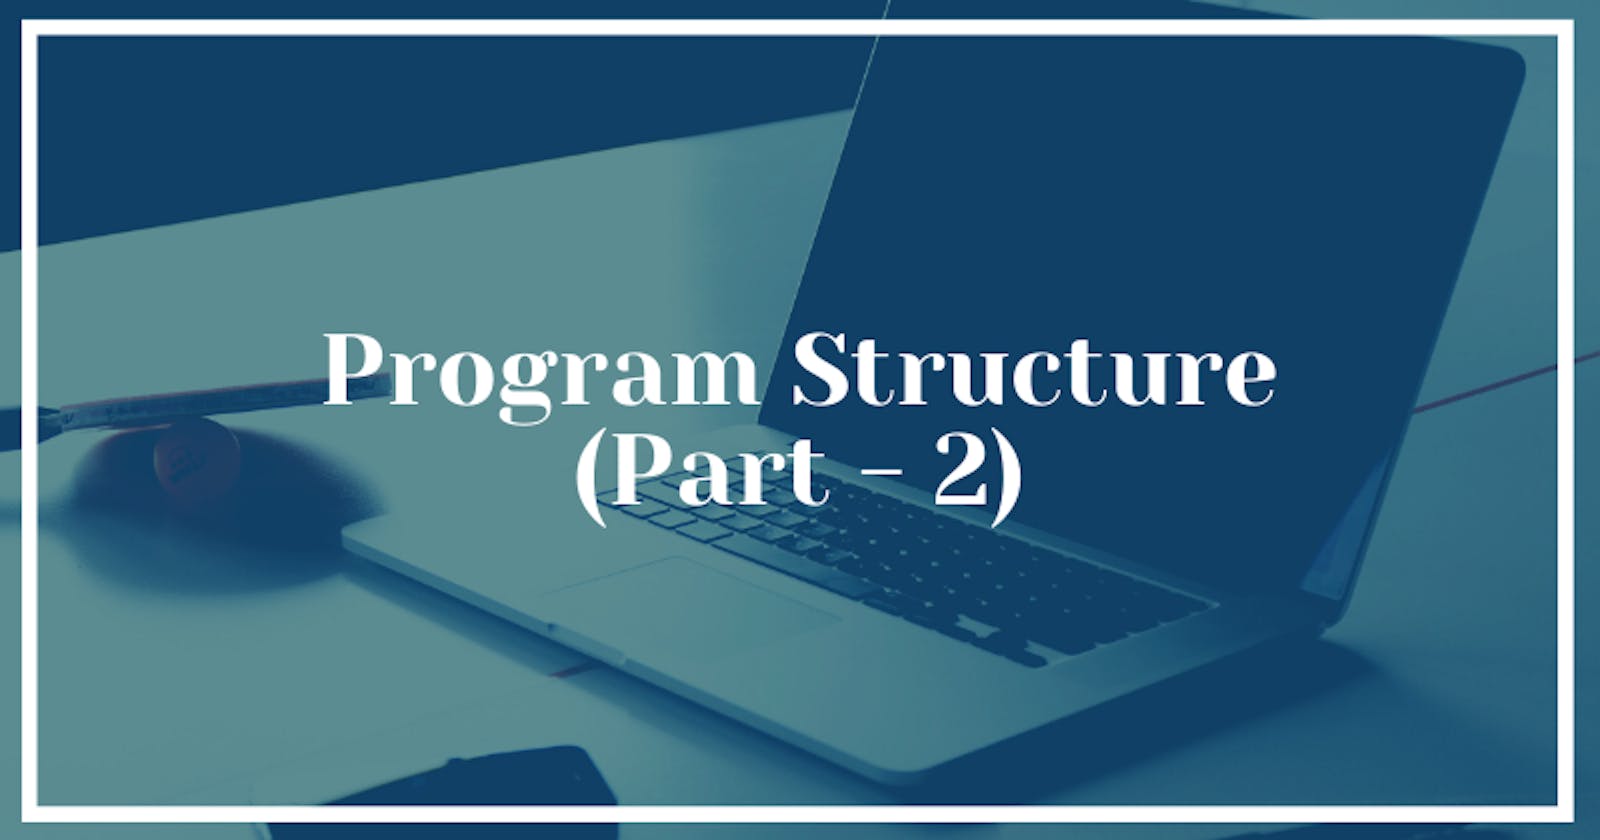 Program Structure (Part - 2)